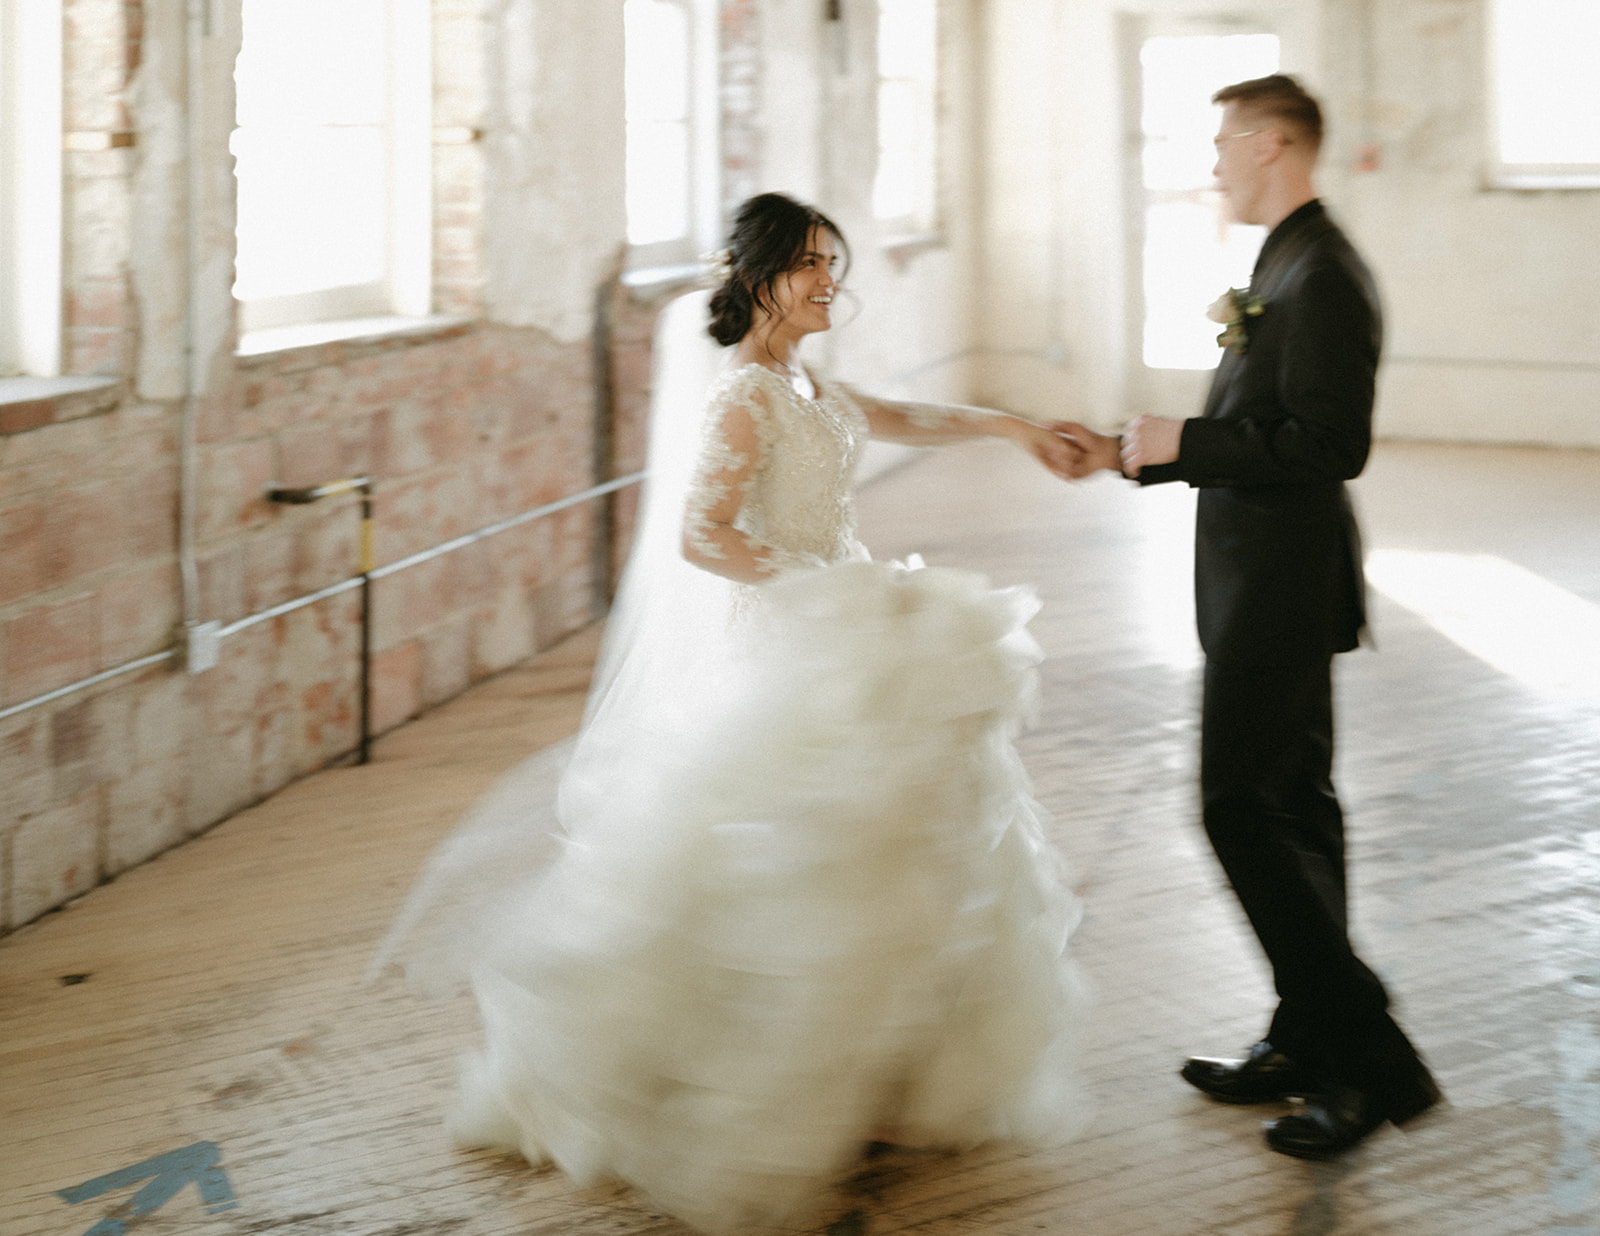 Vintage inspired Saskatoon wedding, blurry photography trends, vintage inspired wedding with ruffled gown